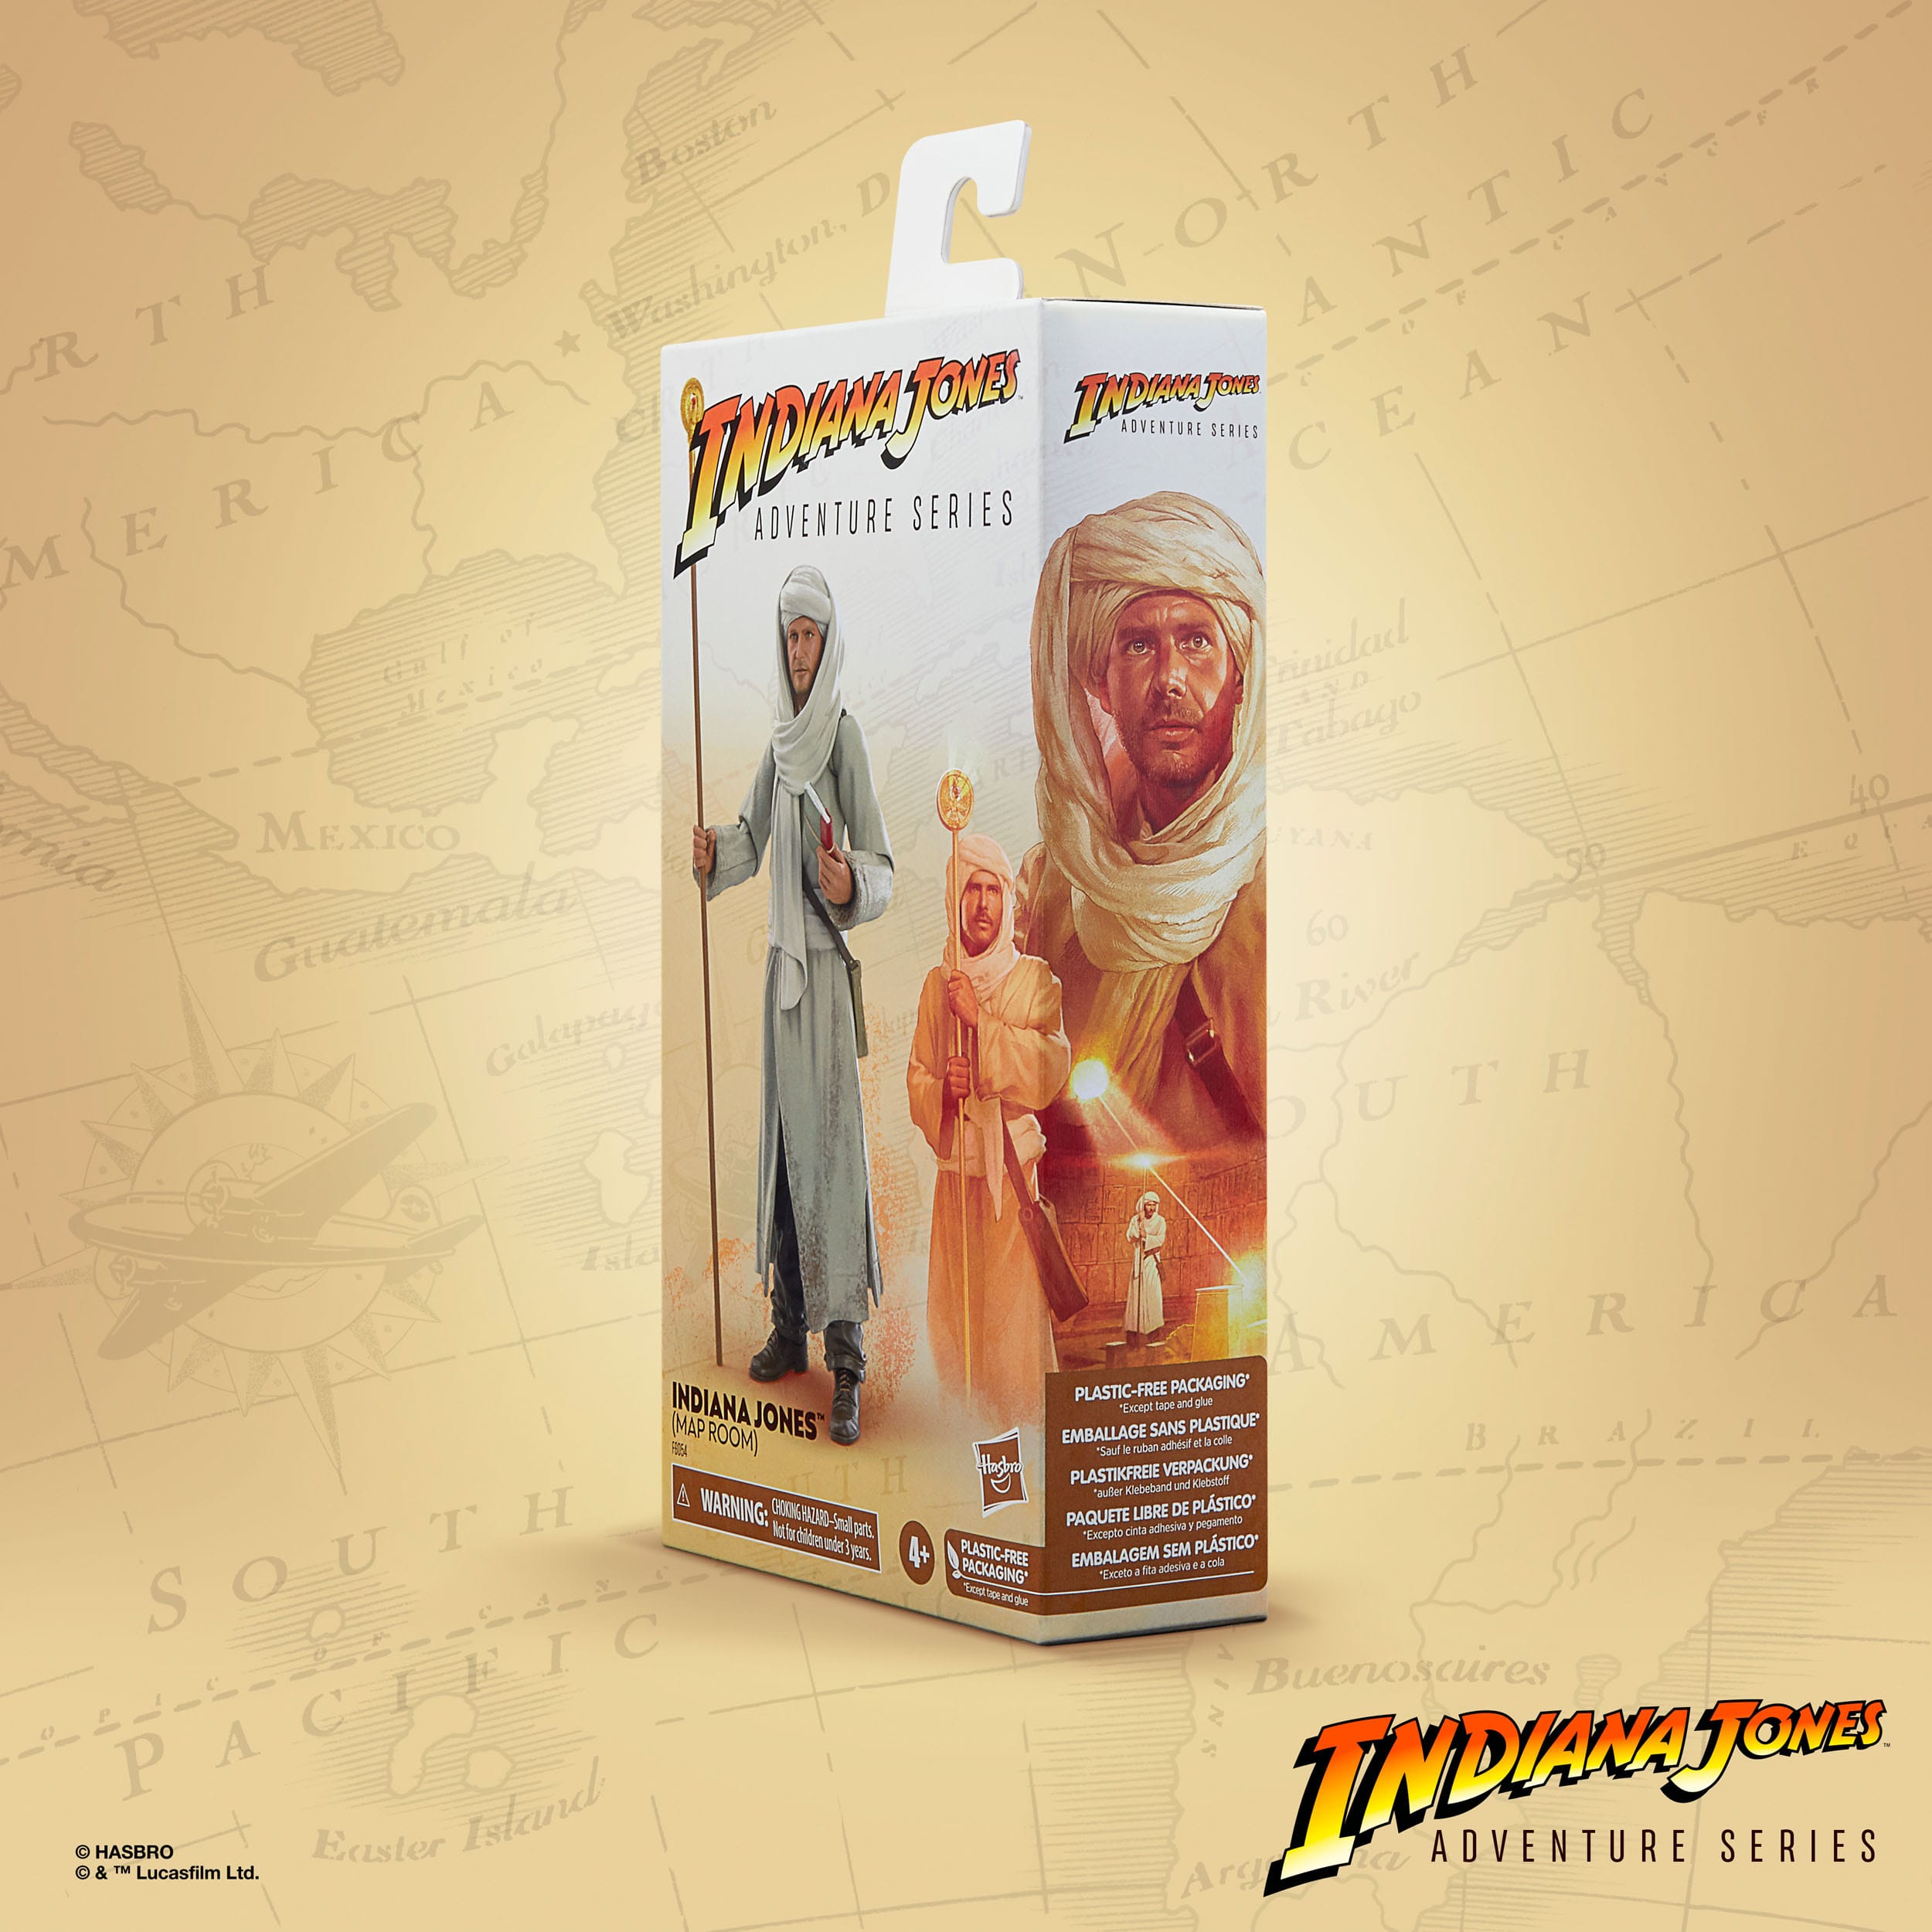 Indiana Jones Adventure Series Actionfigur Indiana Jones (Map Room) (Jäger des verlorenen Schatzes) 15 cm HASF6054 5010994164805